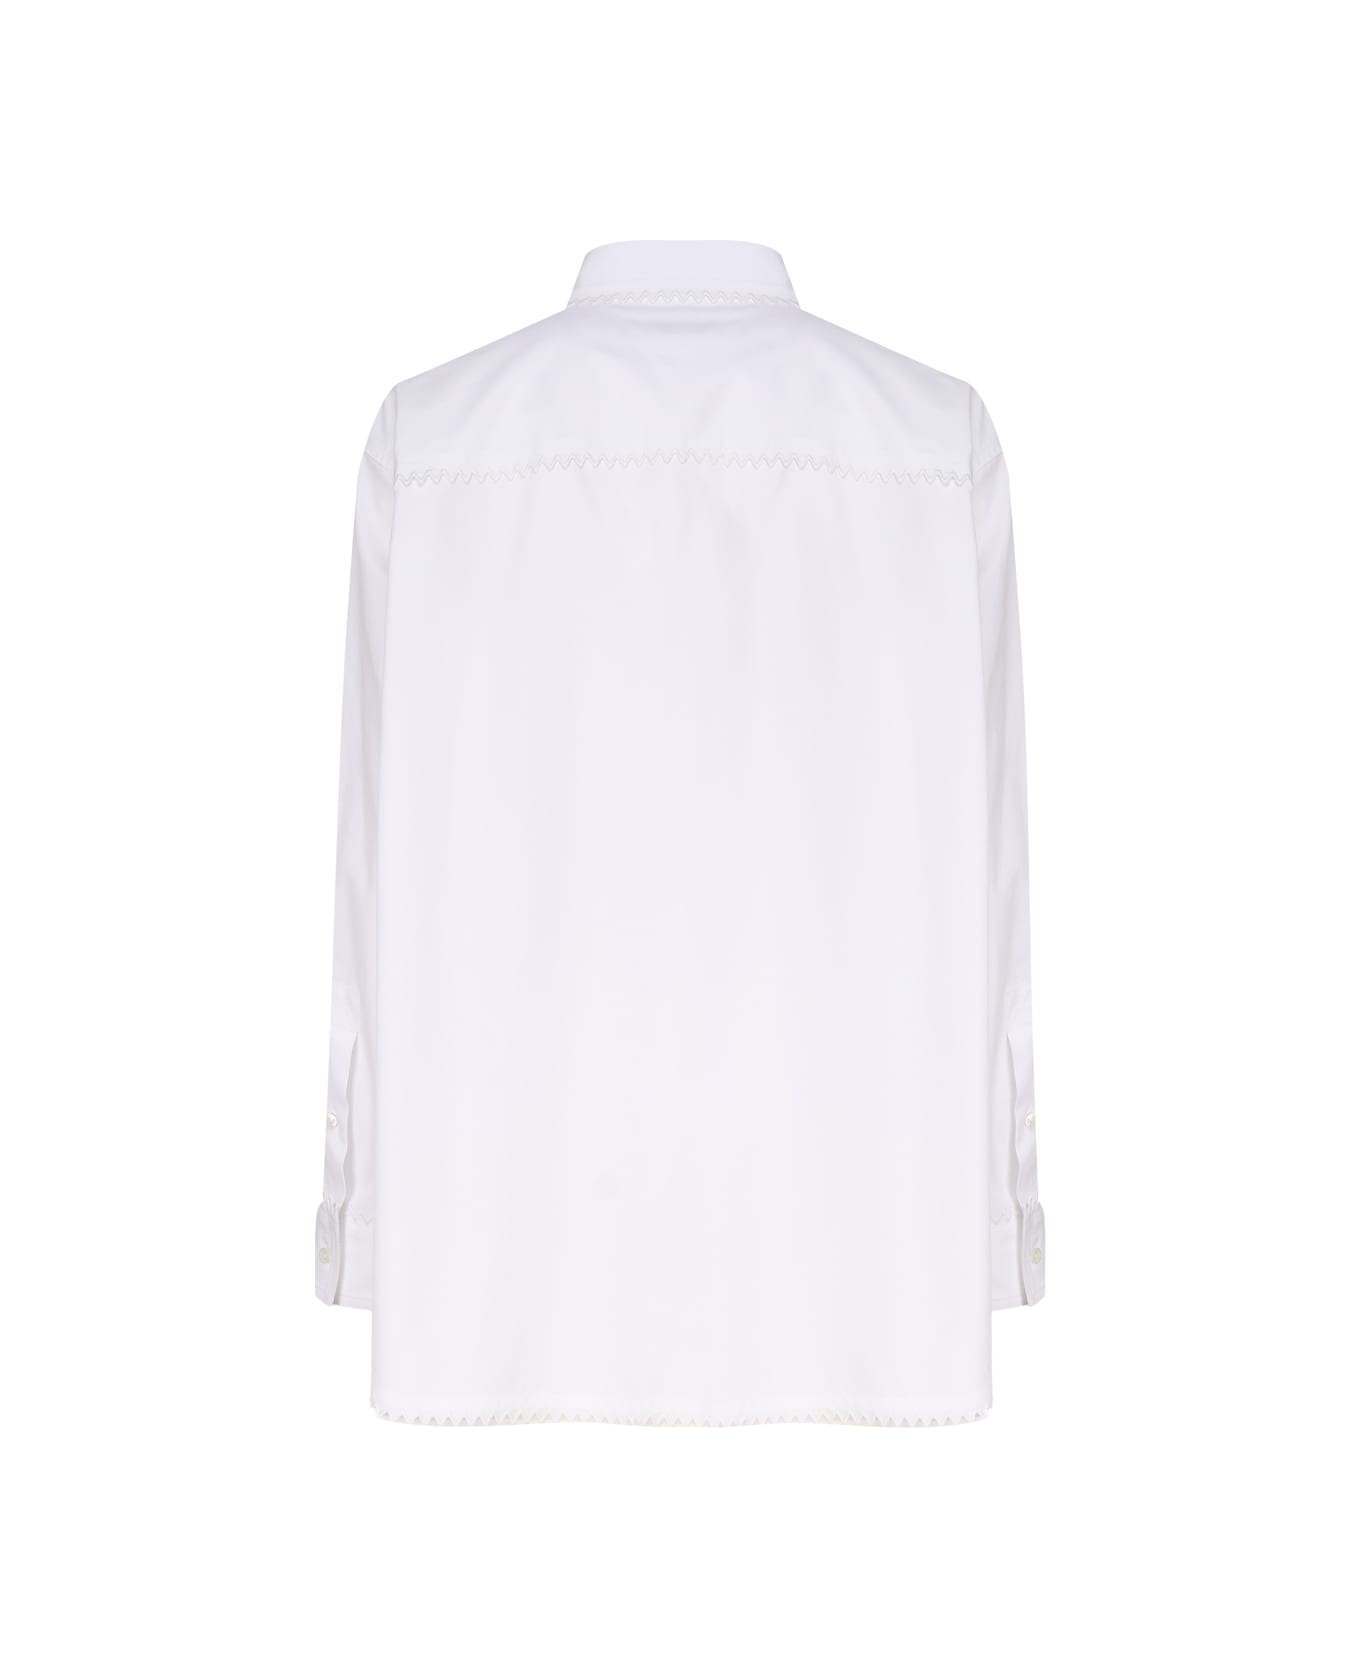 Bottega Veneta Oxford Shirt - White